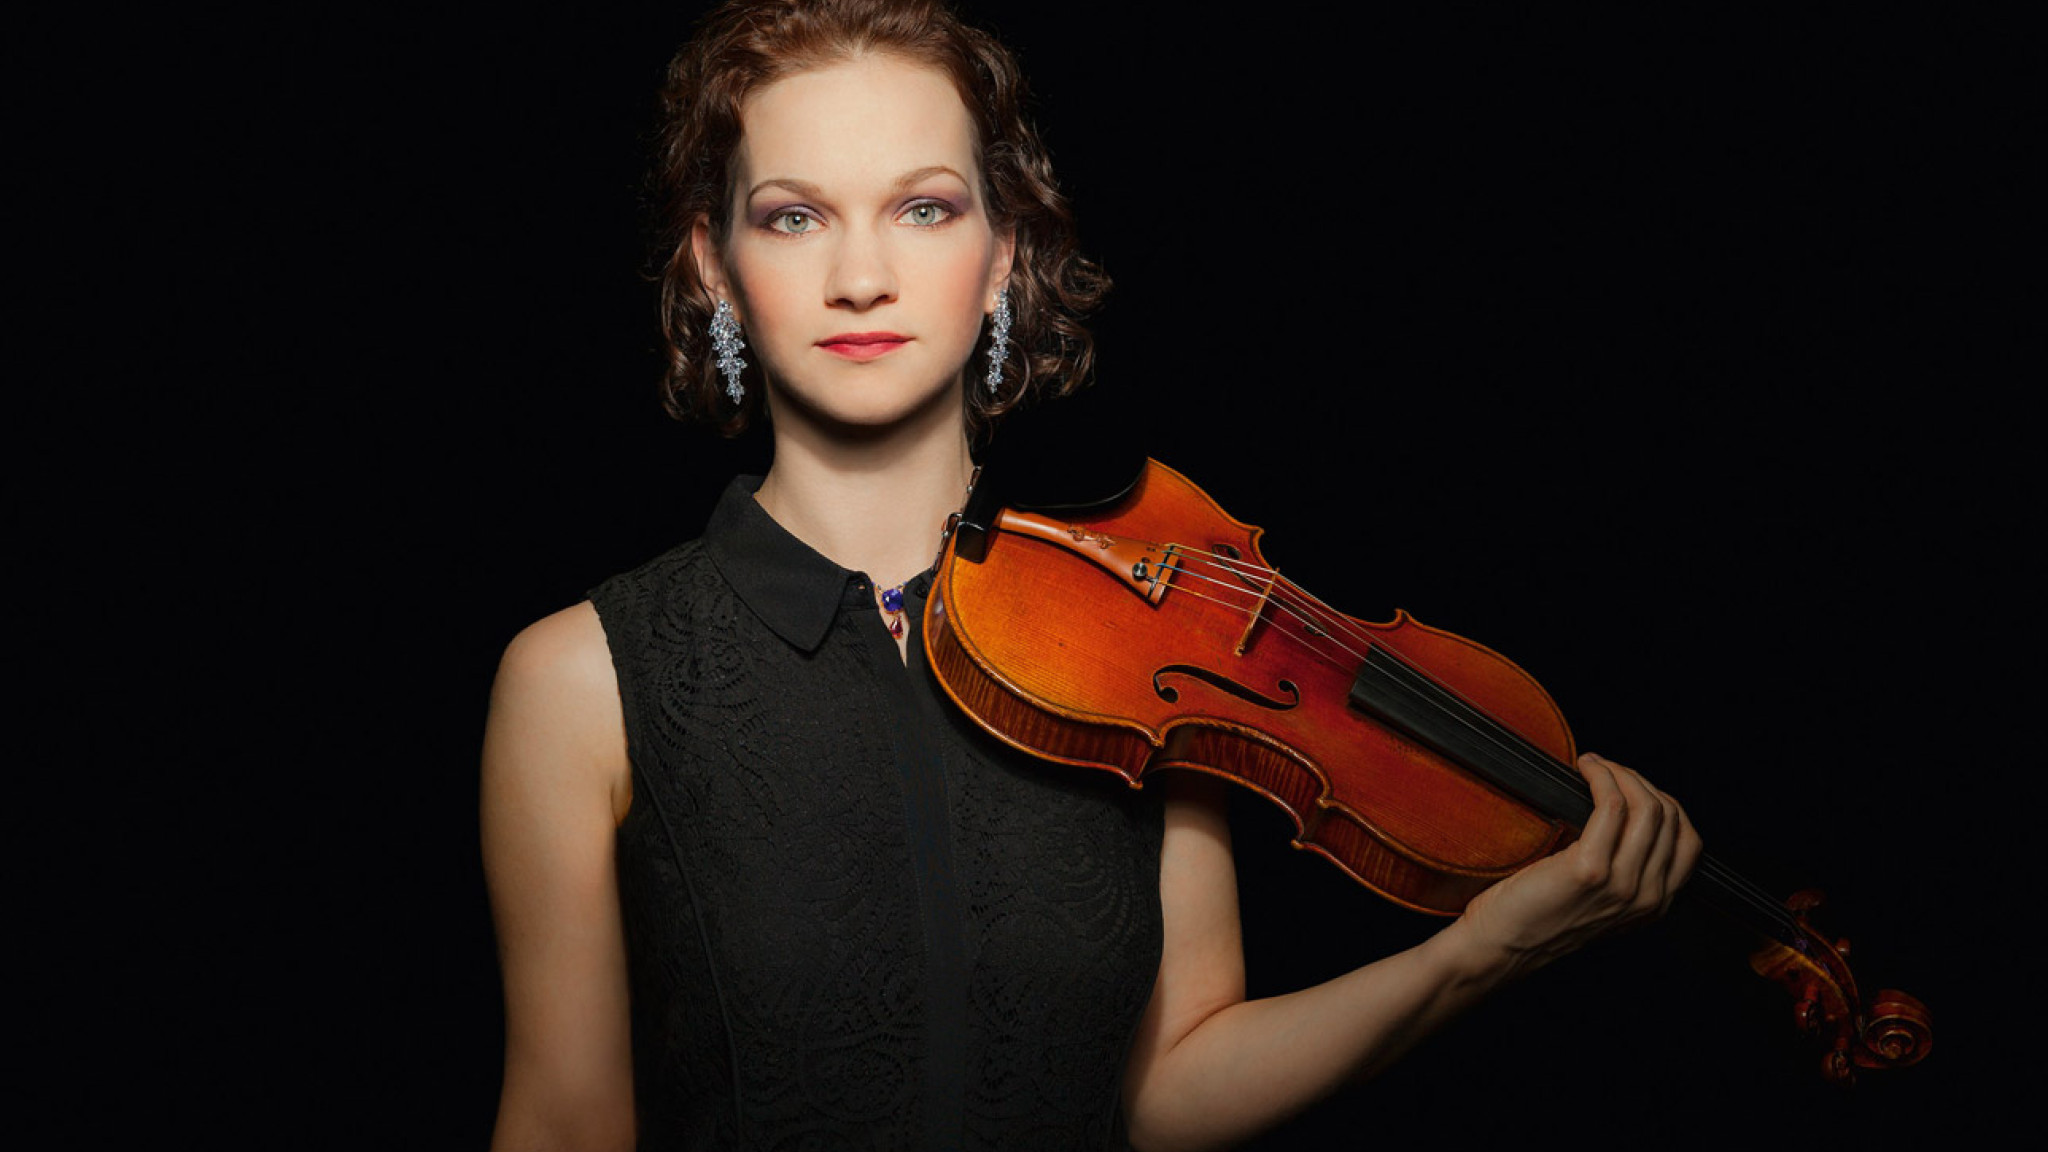 Virtuose Violinkunst - Konzerte von Mozart & Vieuxtemps